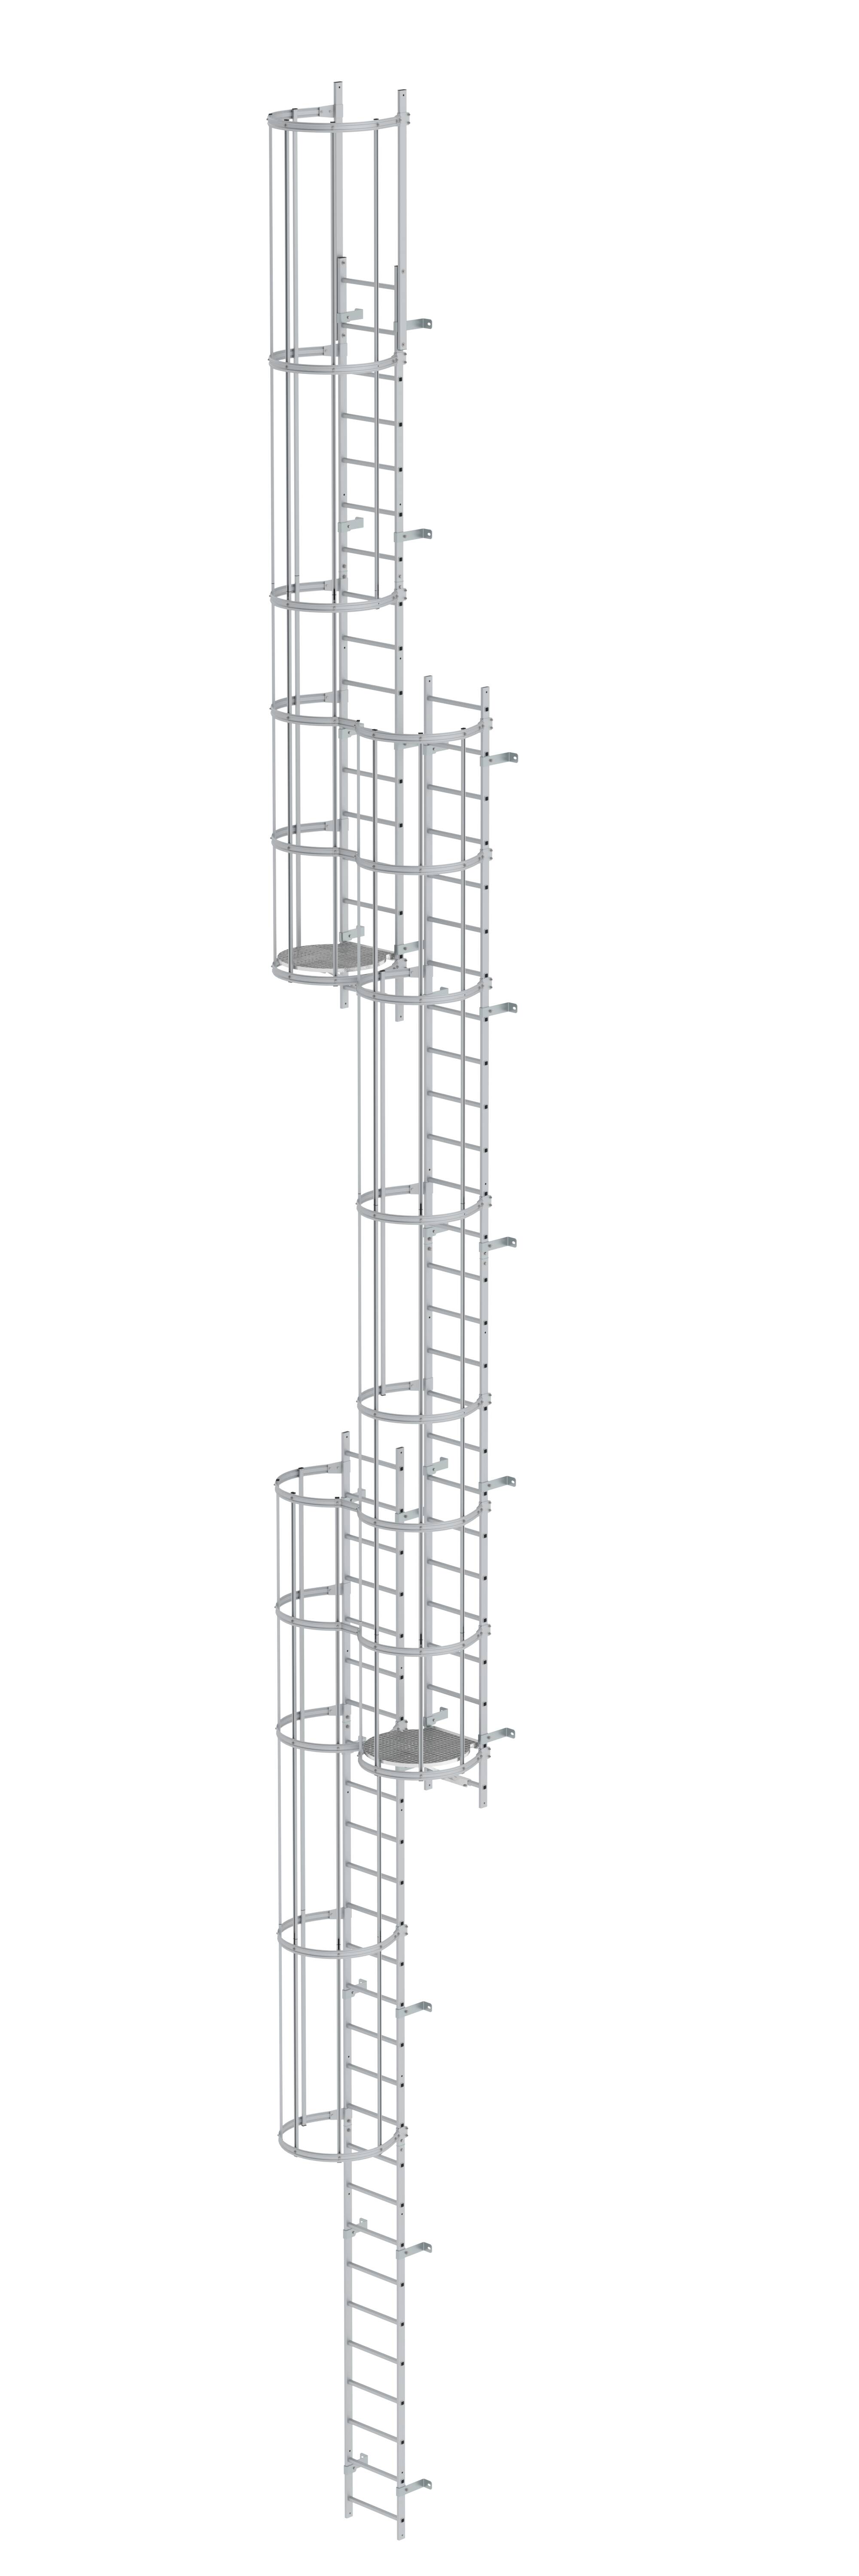 Mehrzügige Steigleiter mit Rückenschutz (Notleiter) Aluminium eloxiert 16,32m